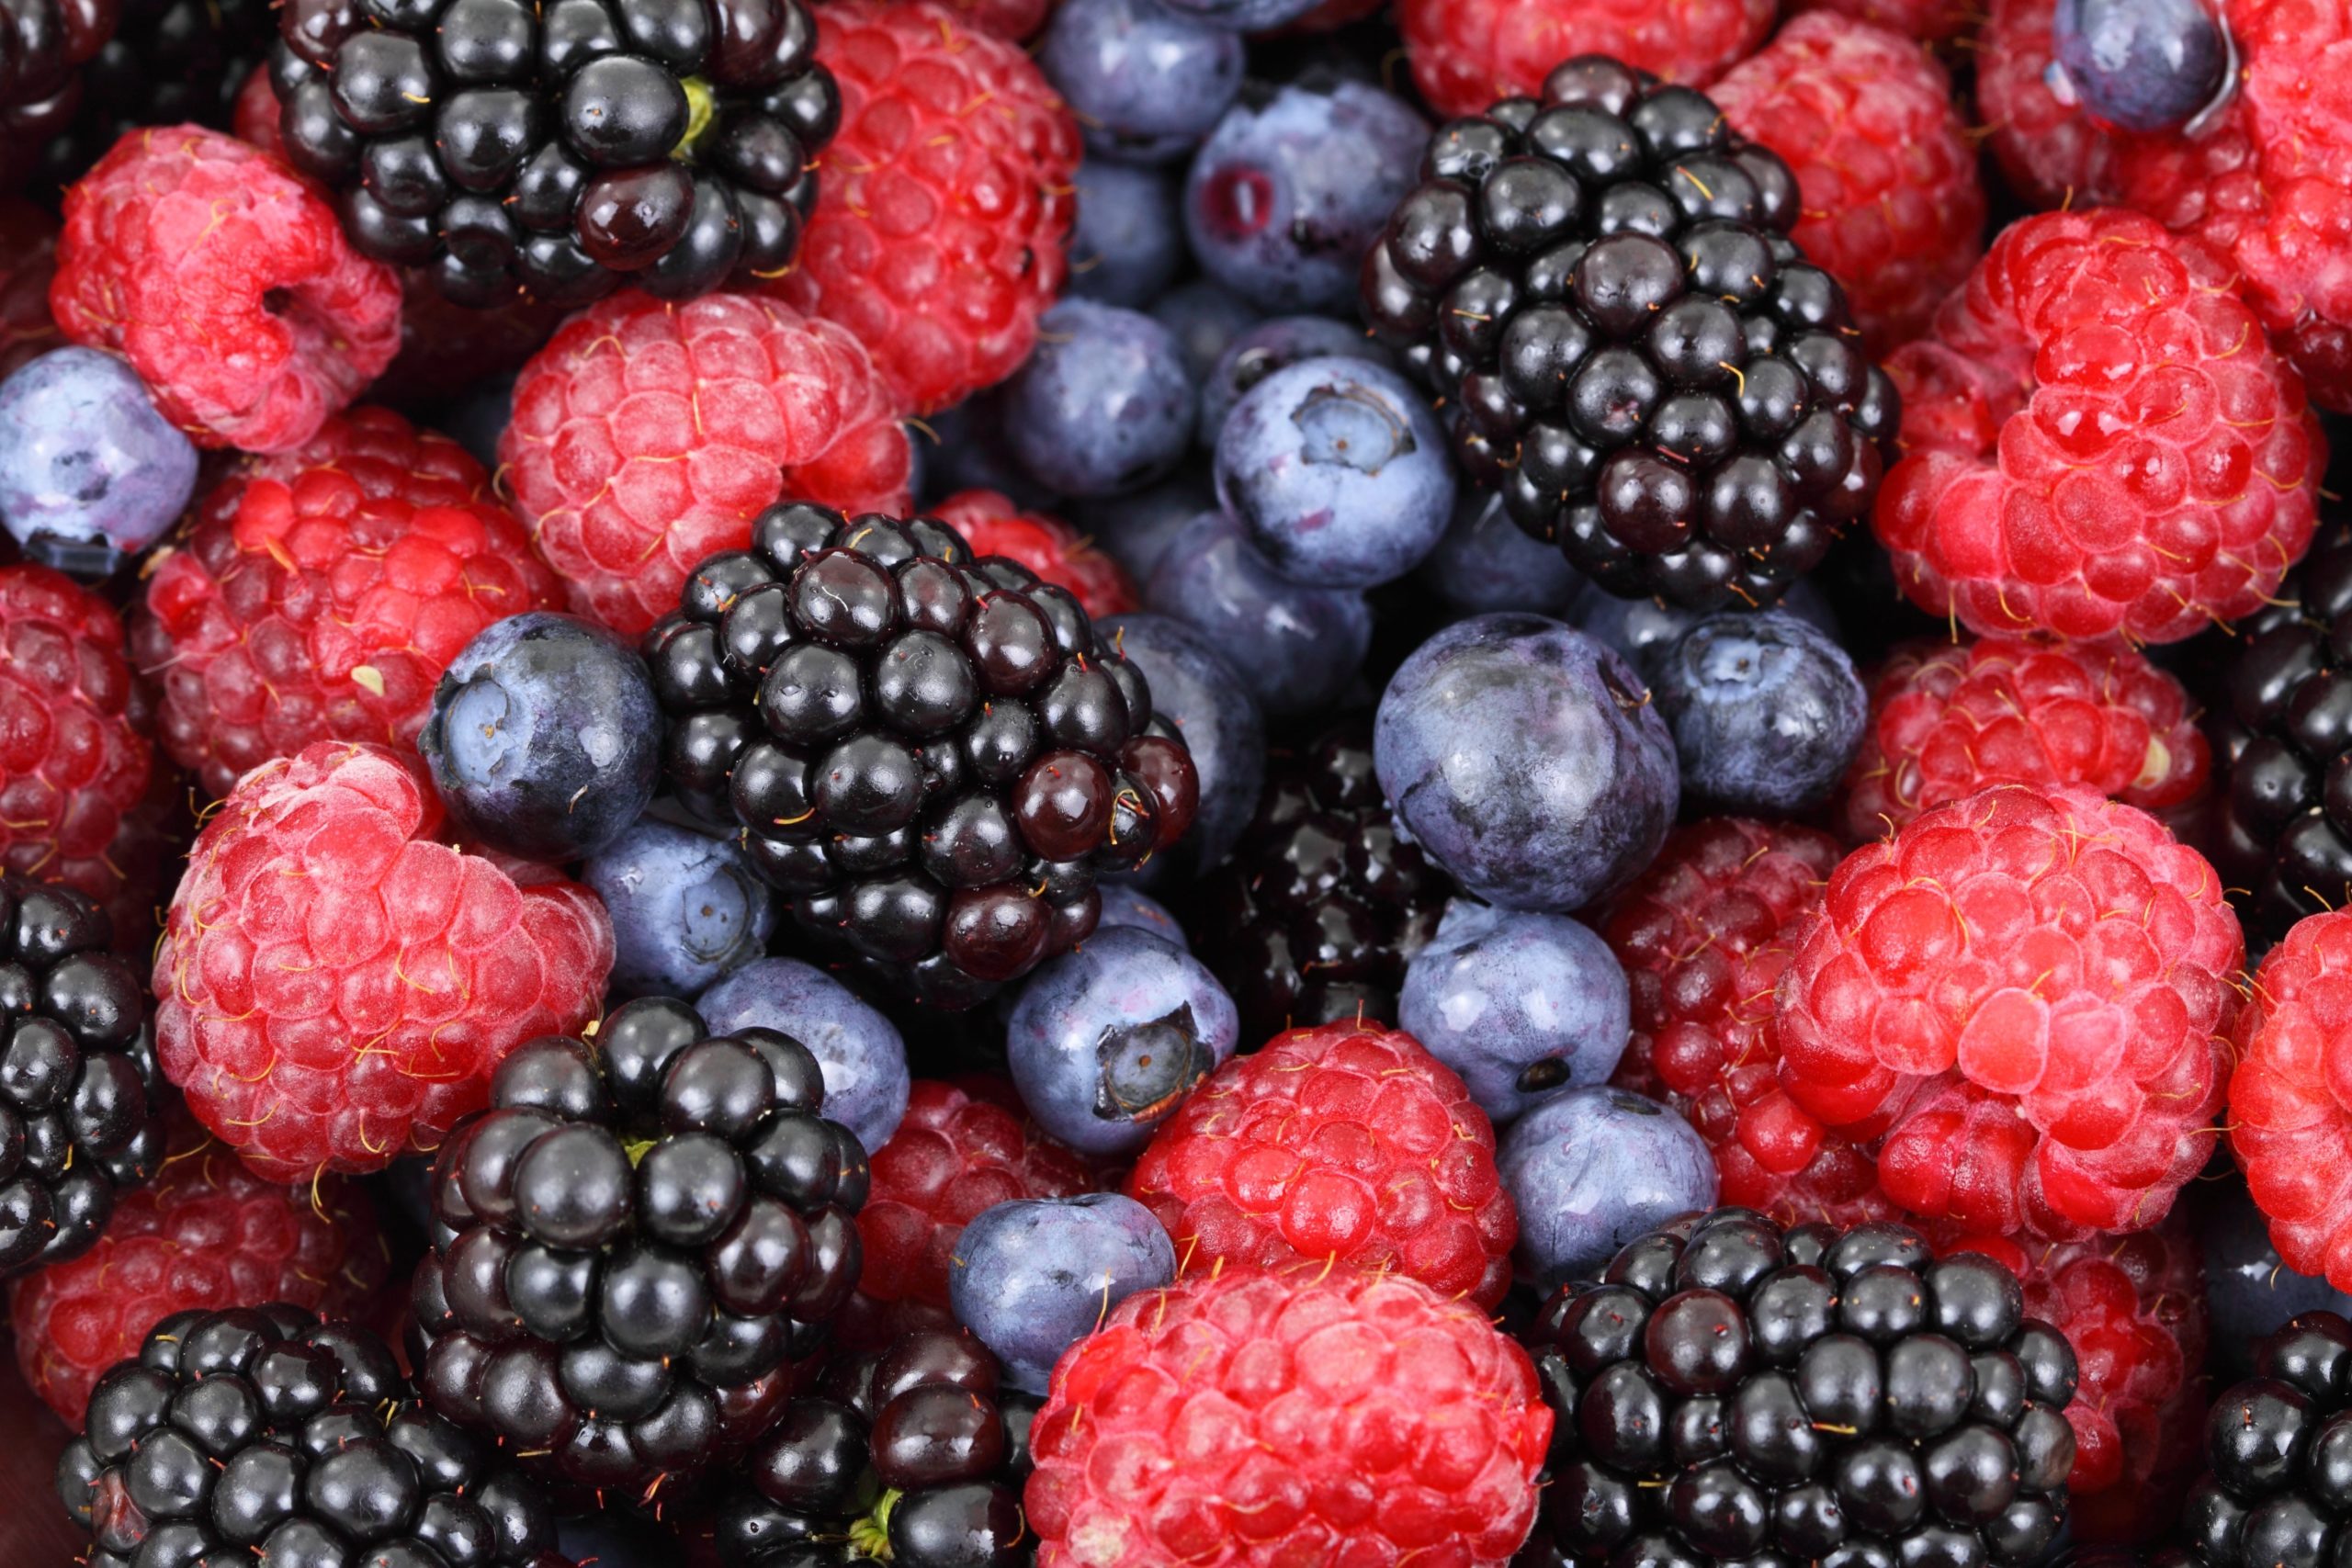 aliments anti-cancer : manger 5 portions de fruits et légumes par jour